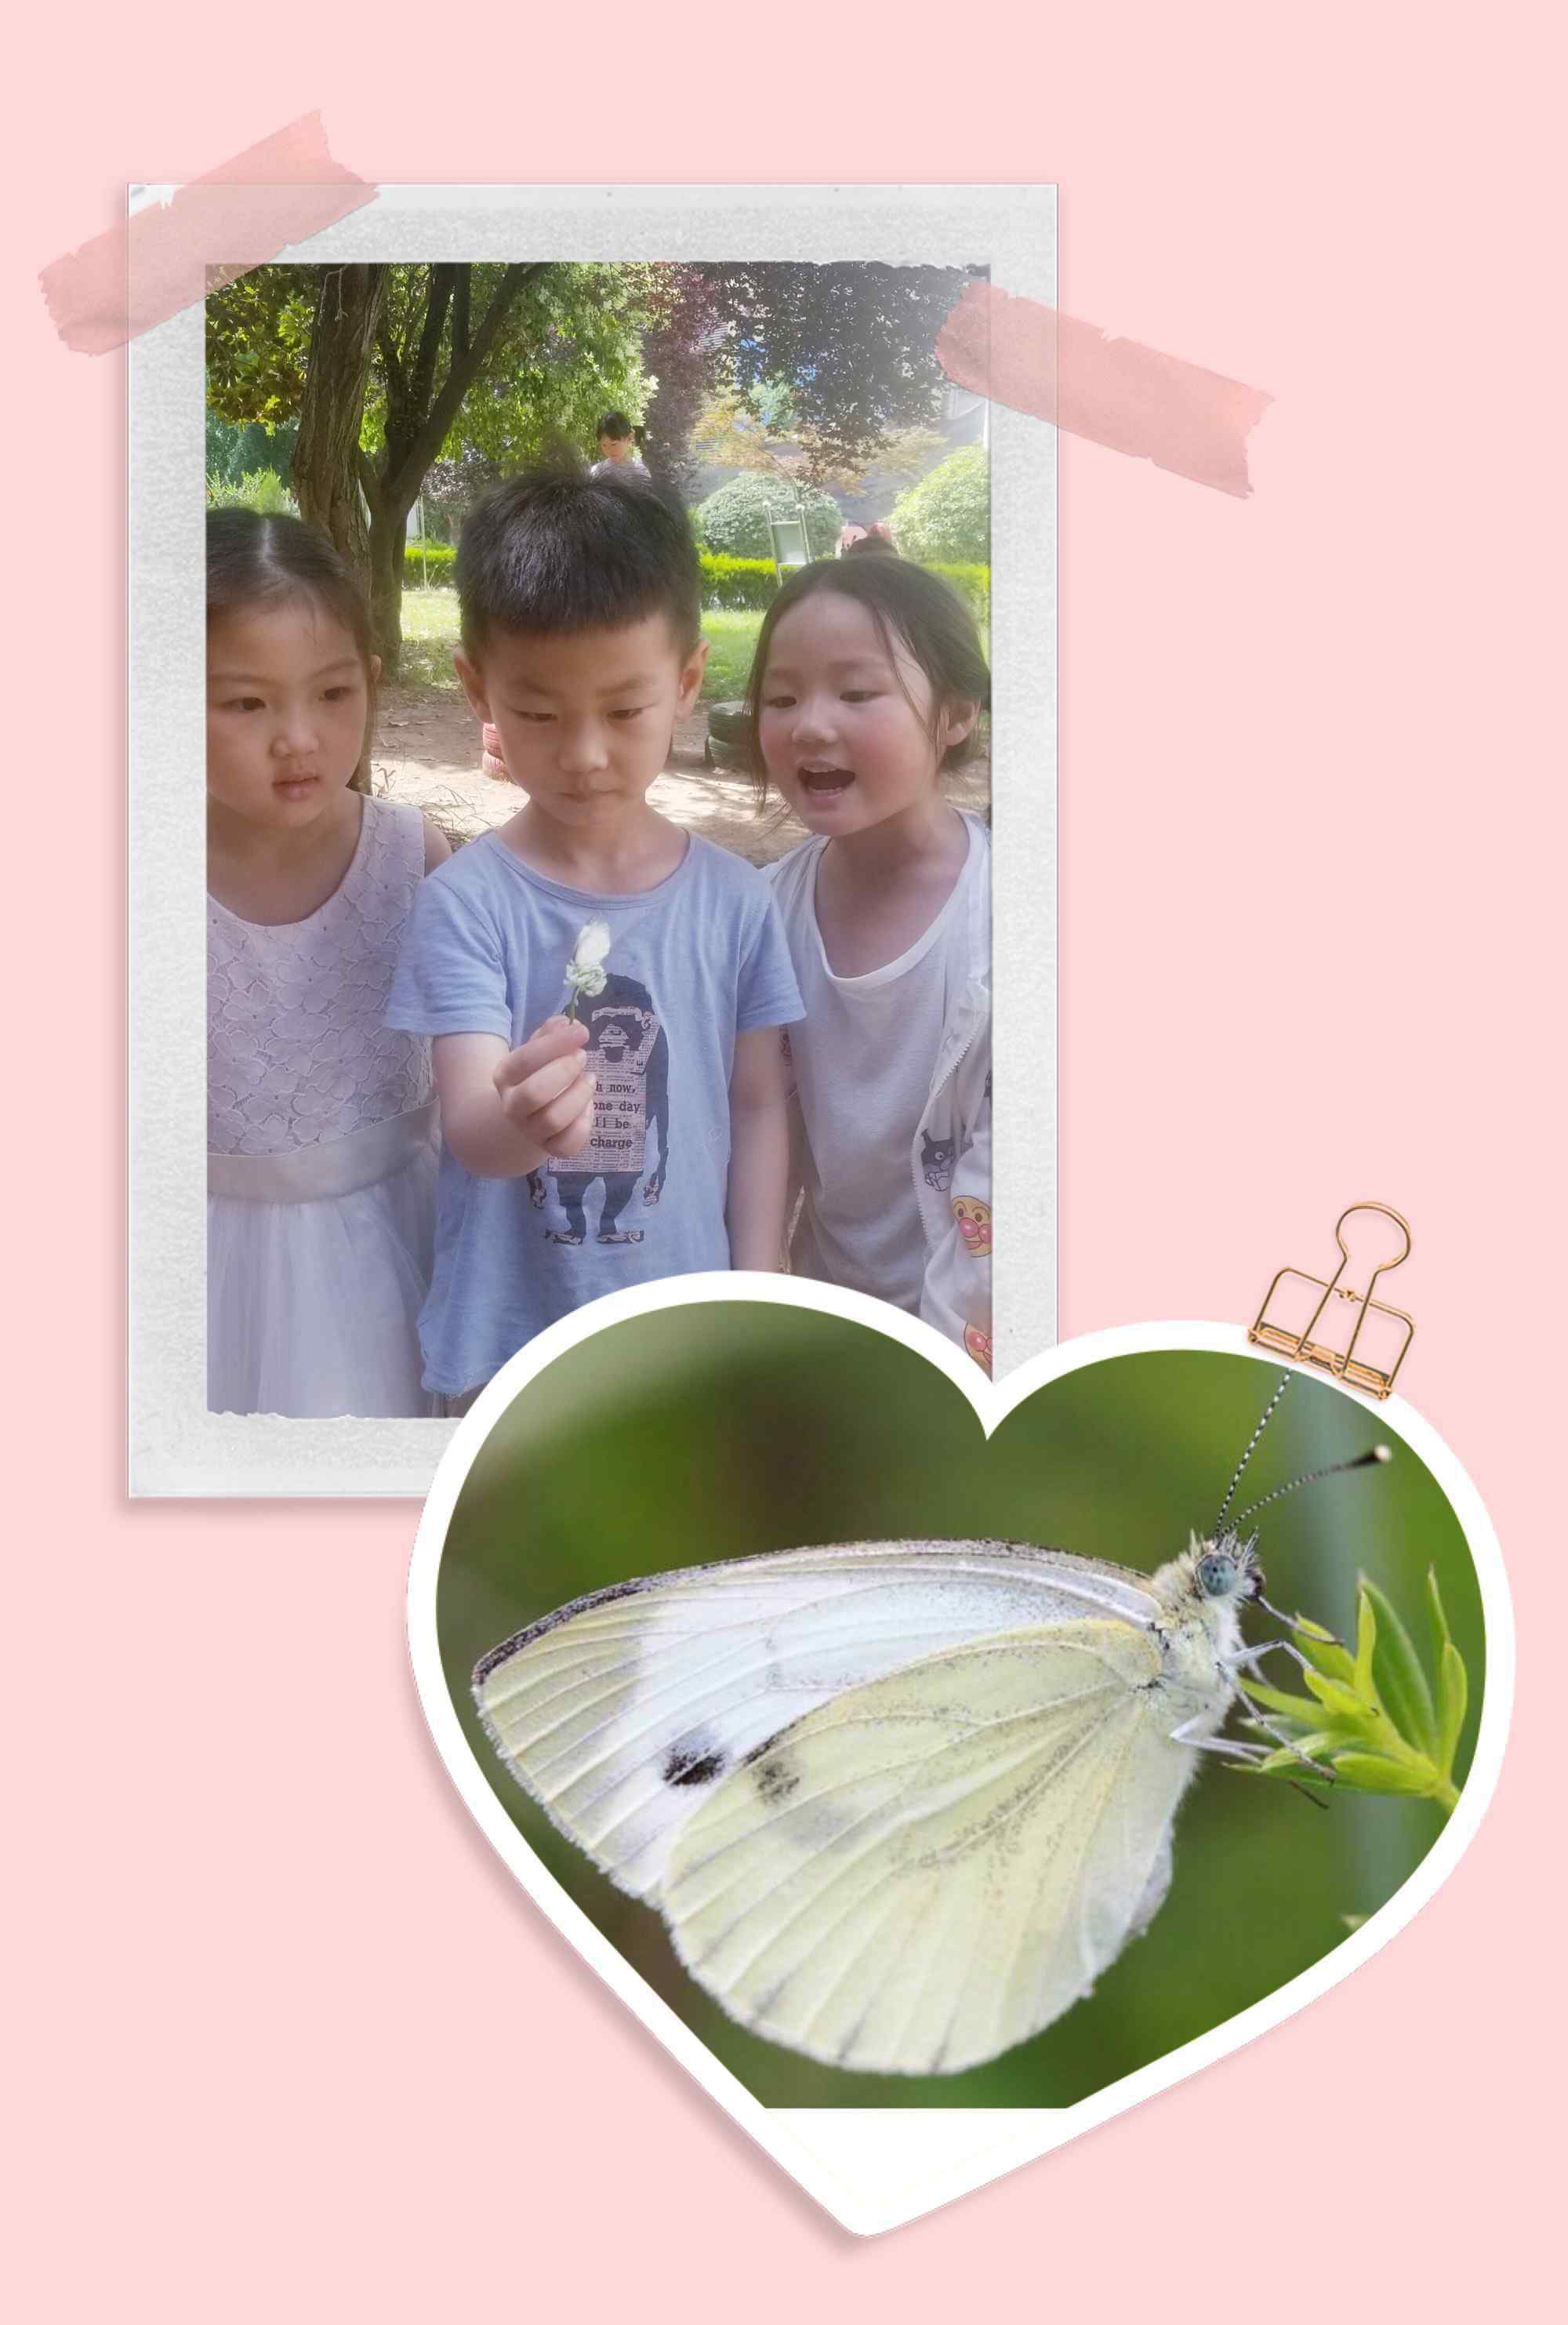 蝴蝶发现花蜜靠 记广场幼儿园中五班班本课程活动《蝴蝶